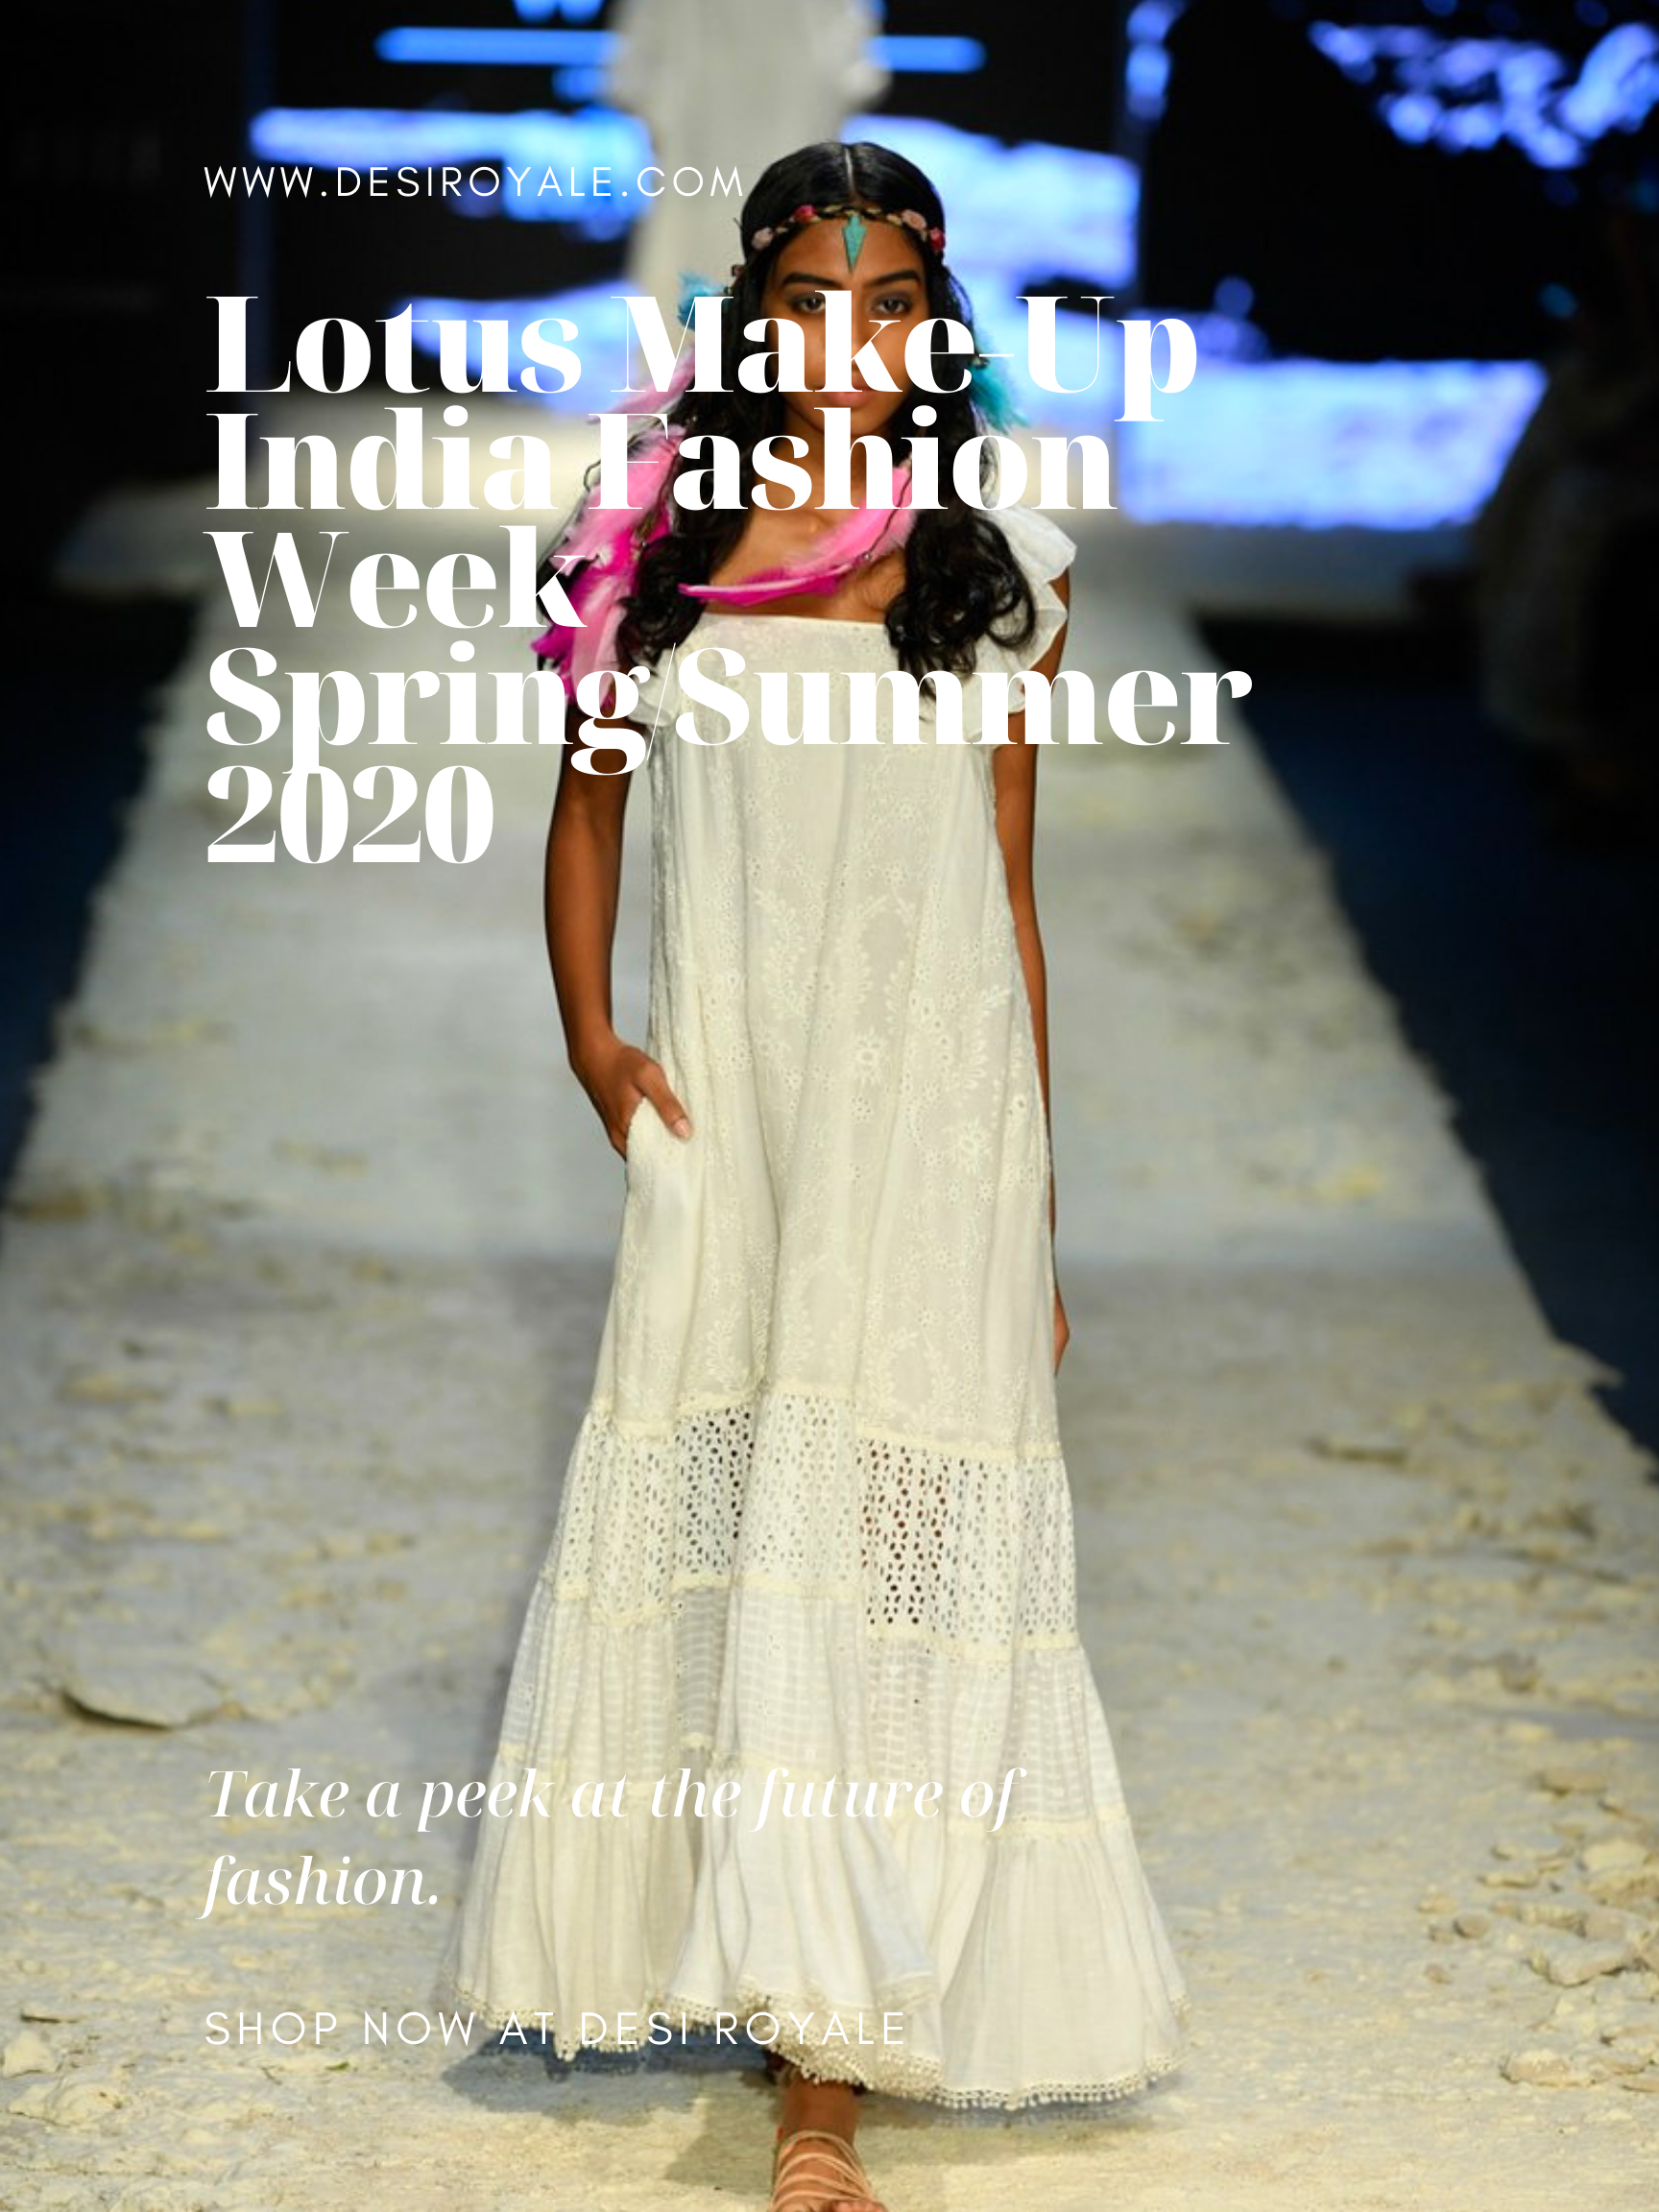 Lotus Make-Up India Fashion Week spring/summer 2020 - Payal Jain